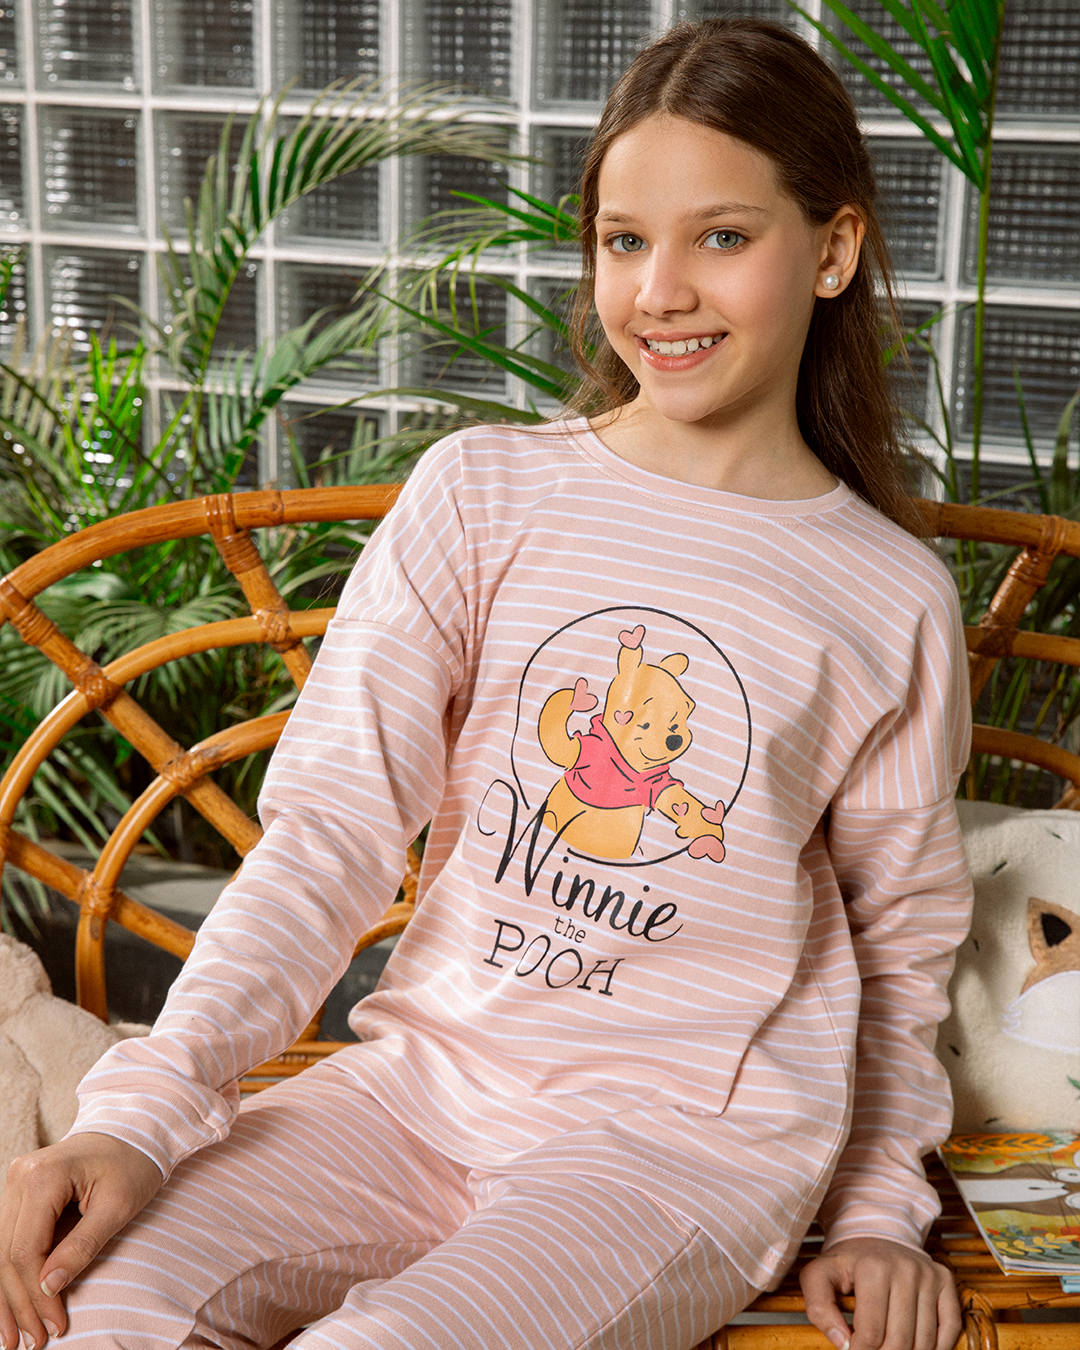 Winnie the Pooh Girls' striped pajamas